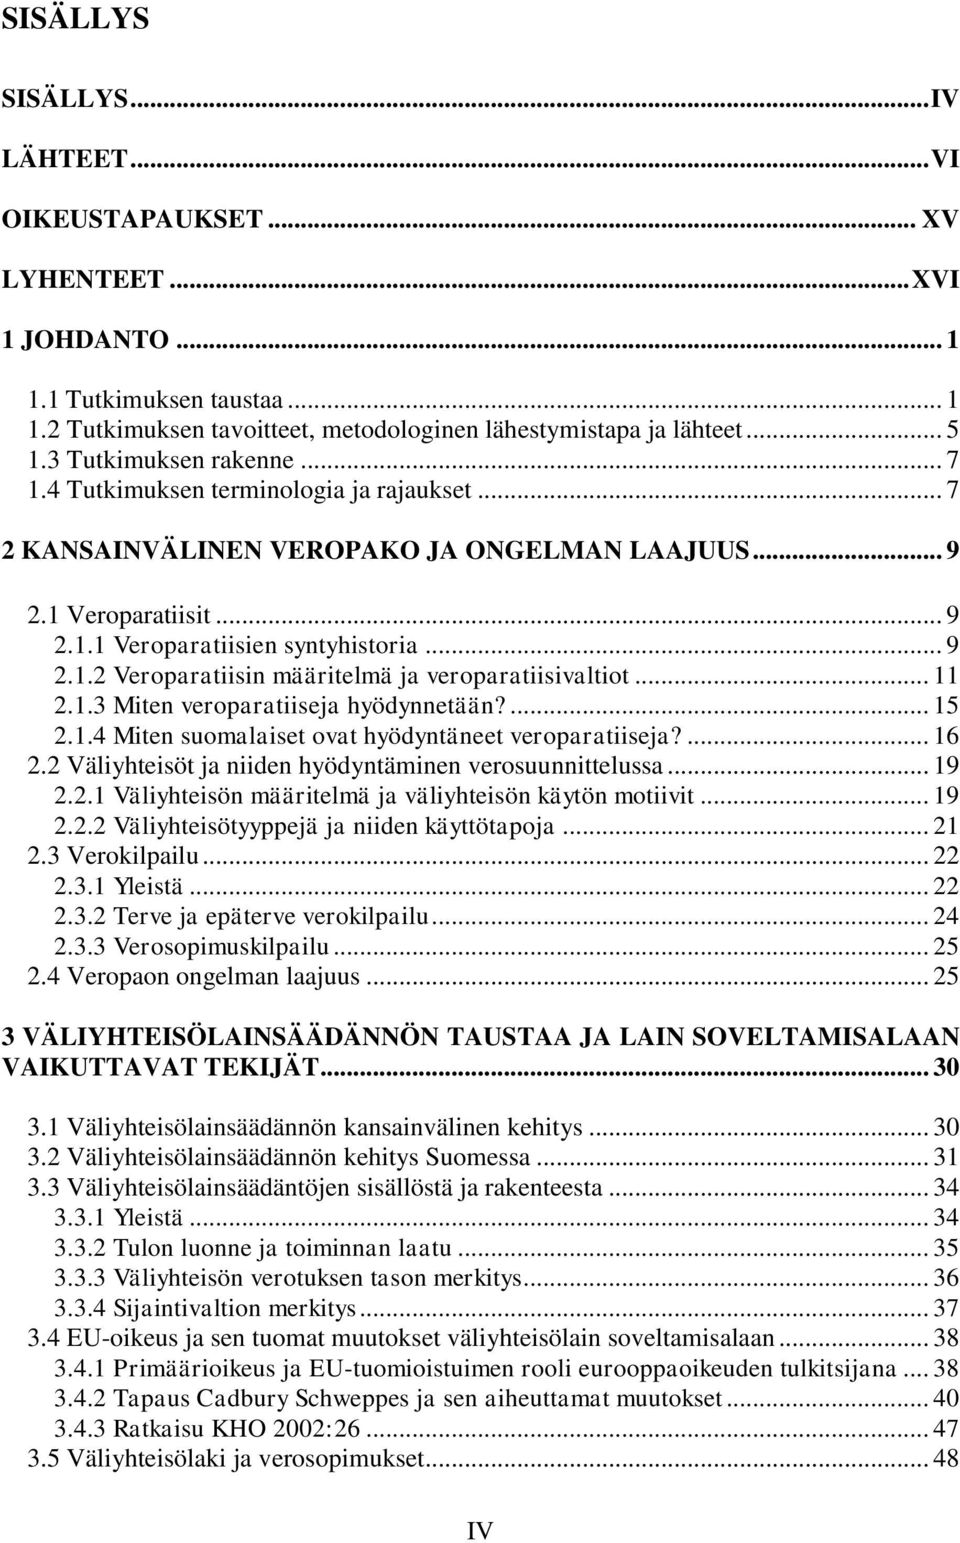 .. 11 2.1.3 Miten veroparatiiseja hyödynnetään?... 15 2.1.4 Miten suomalaiset ovat hyödyntäneet veroparatiiseja?... 16 2.2 Väliyhteisöt ja niiden hyödyntäminen verosuunnittelussa... 19 2.2.1 Väliyhteisön määritelmä ja väliyhteisön käytön motiivit.